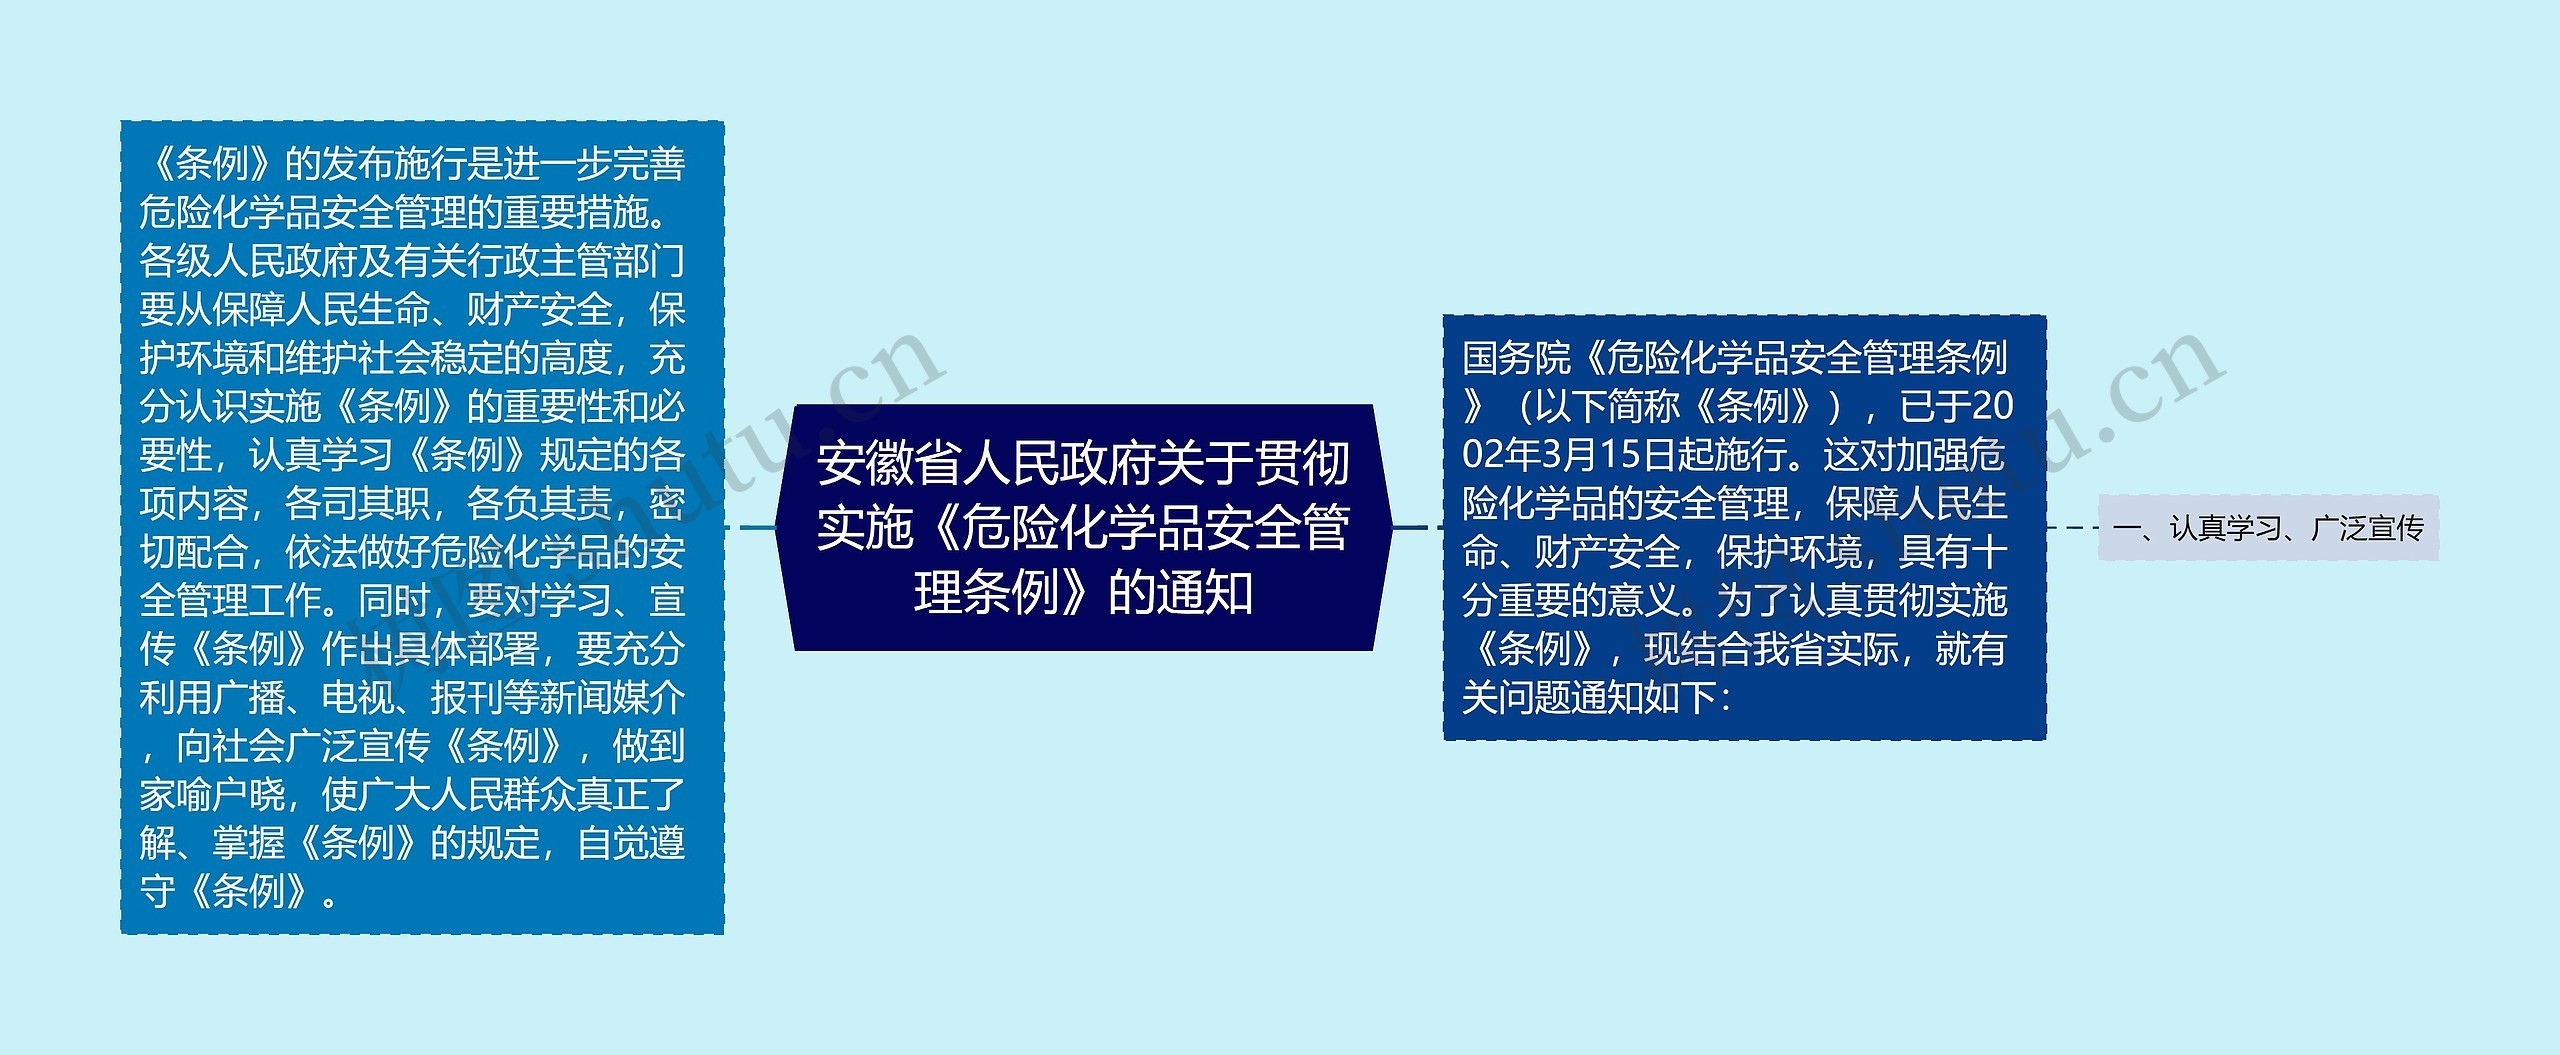 安徽省人民政府关于贯彻实施《危险化学品安全管理条例》的通知